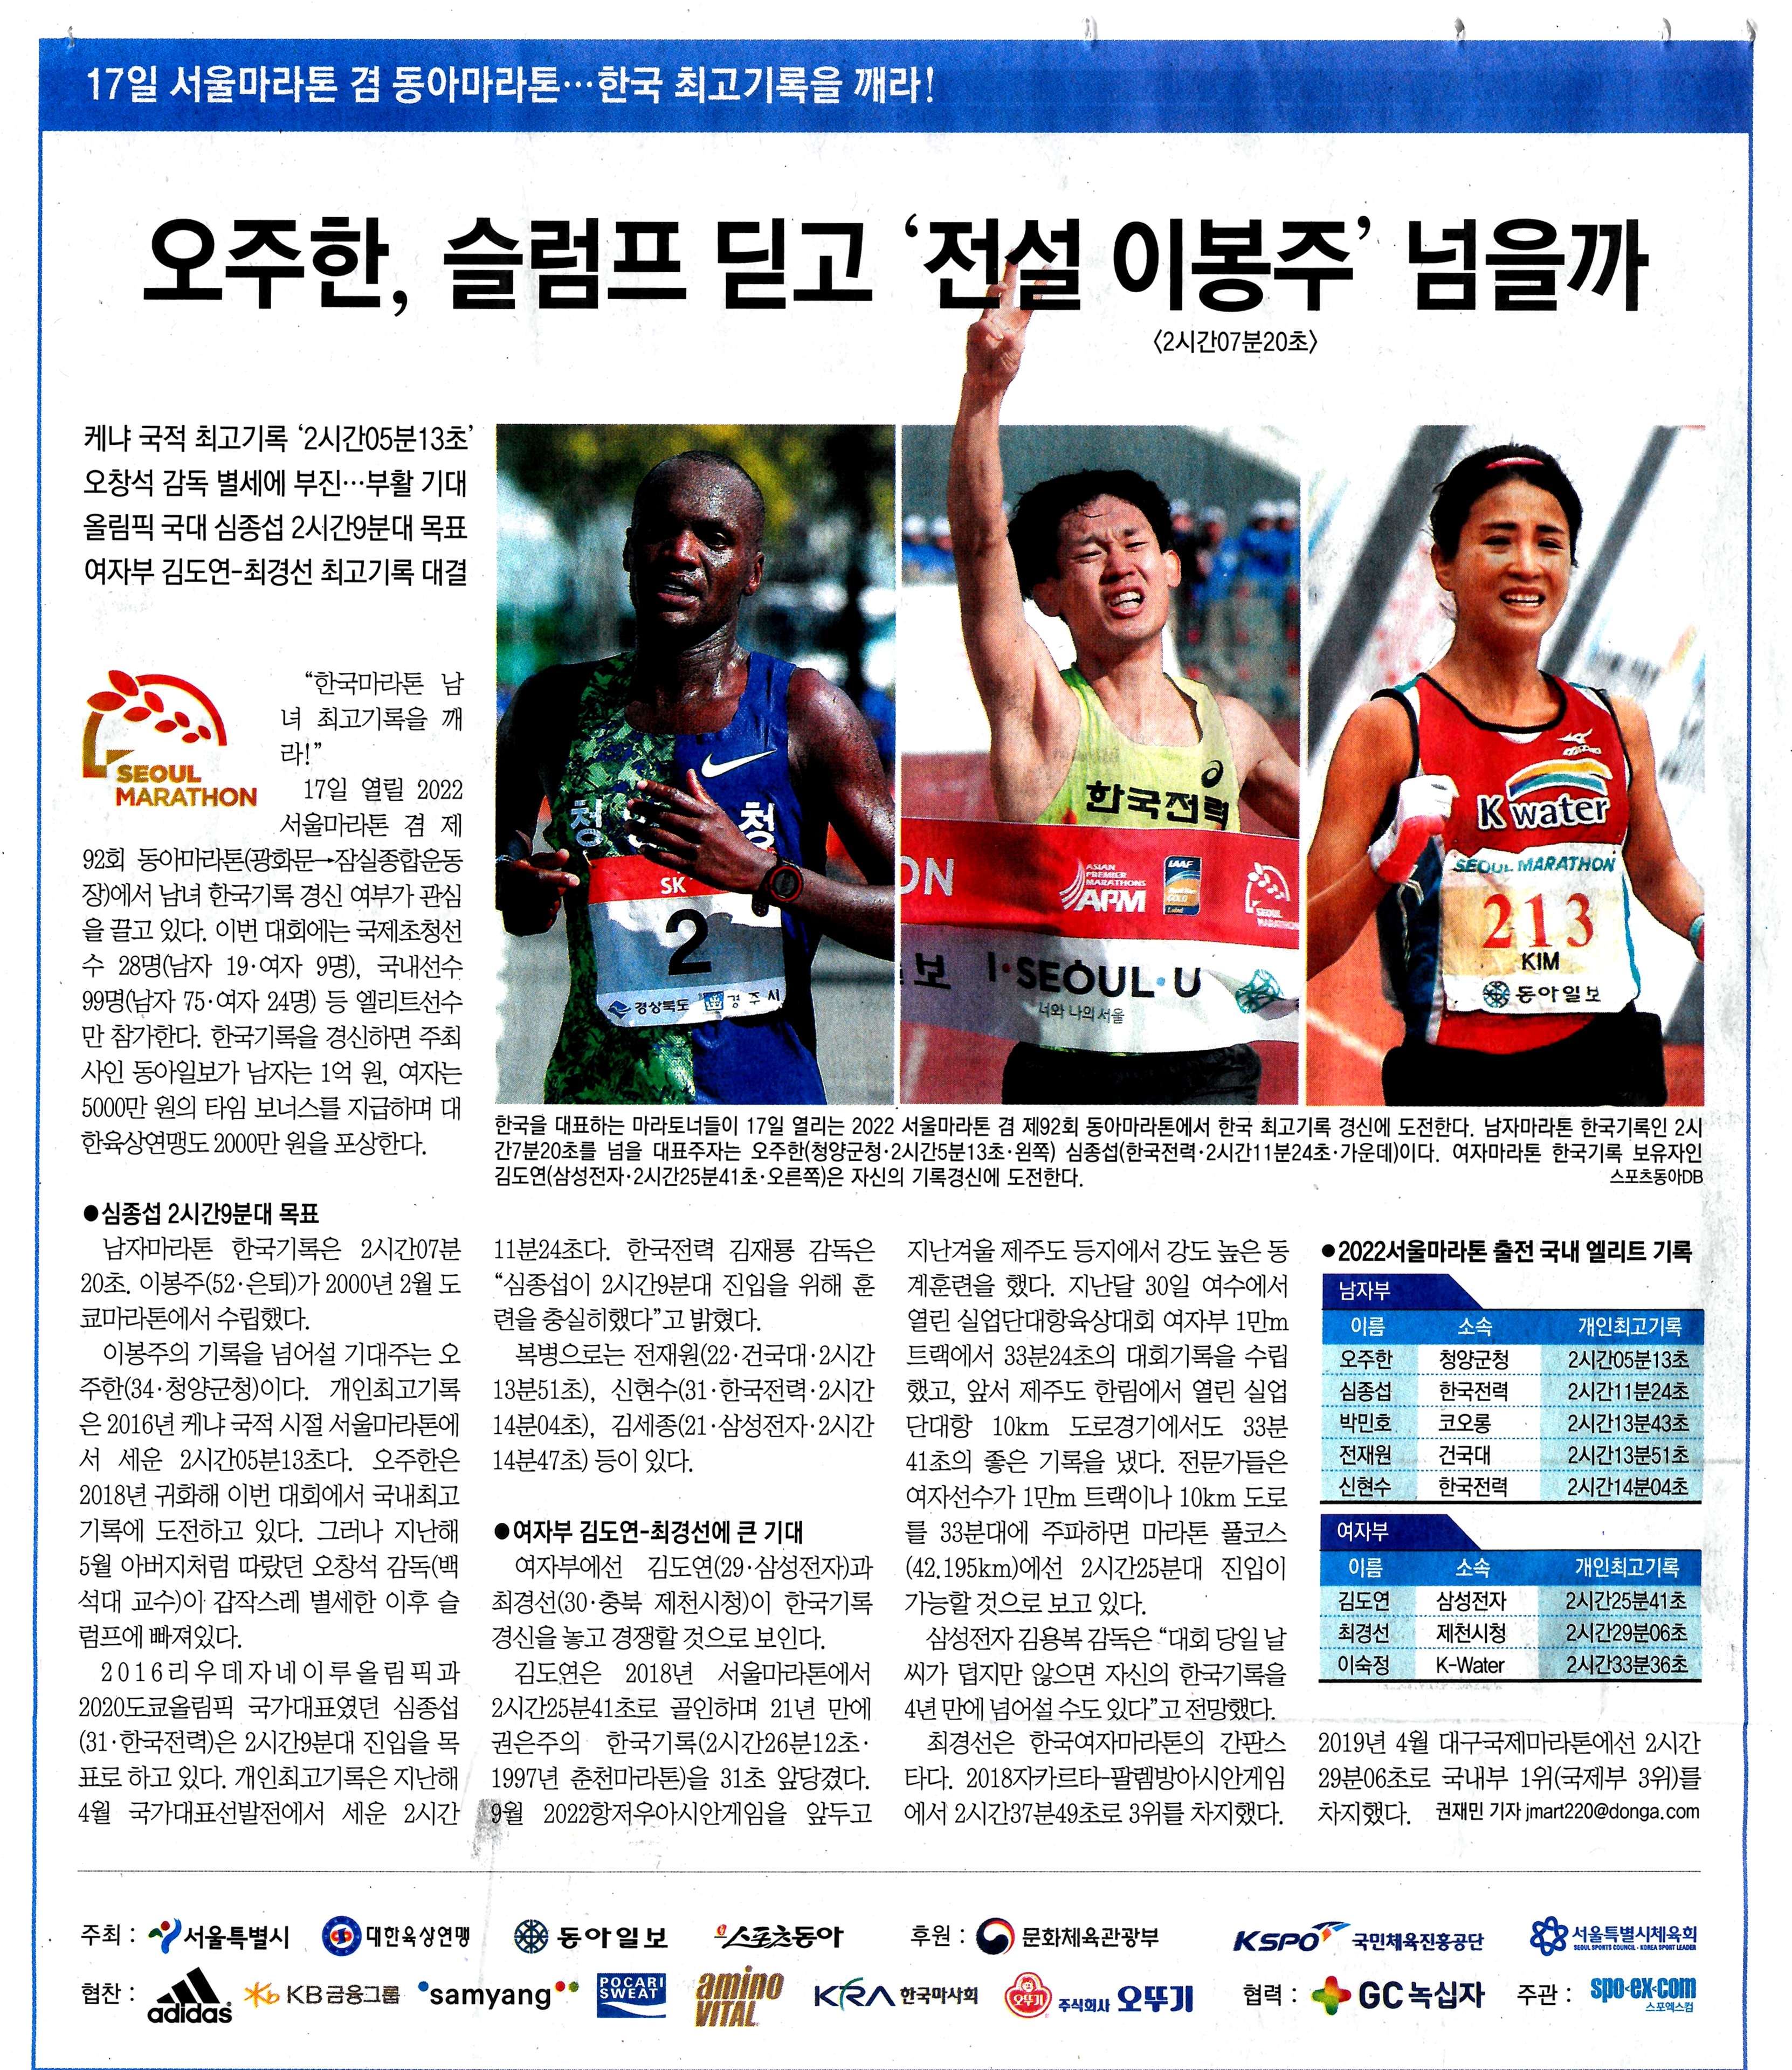 17일 서울마라톤 겸 동아마라톤 한국 최고기록을 깨라!